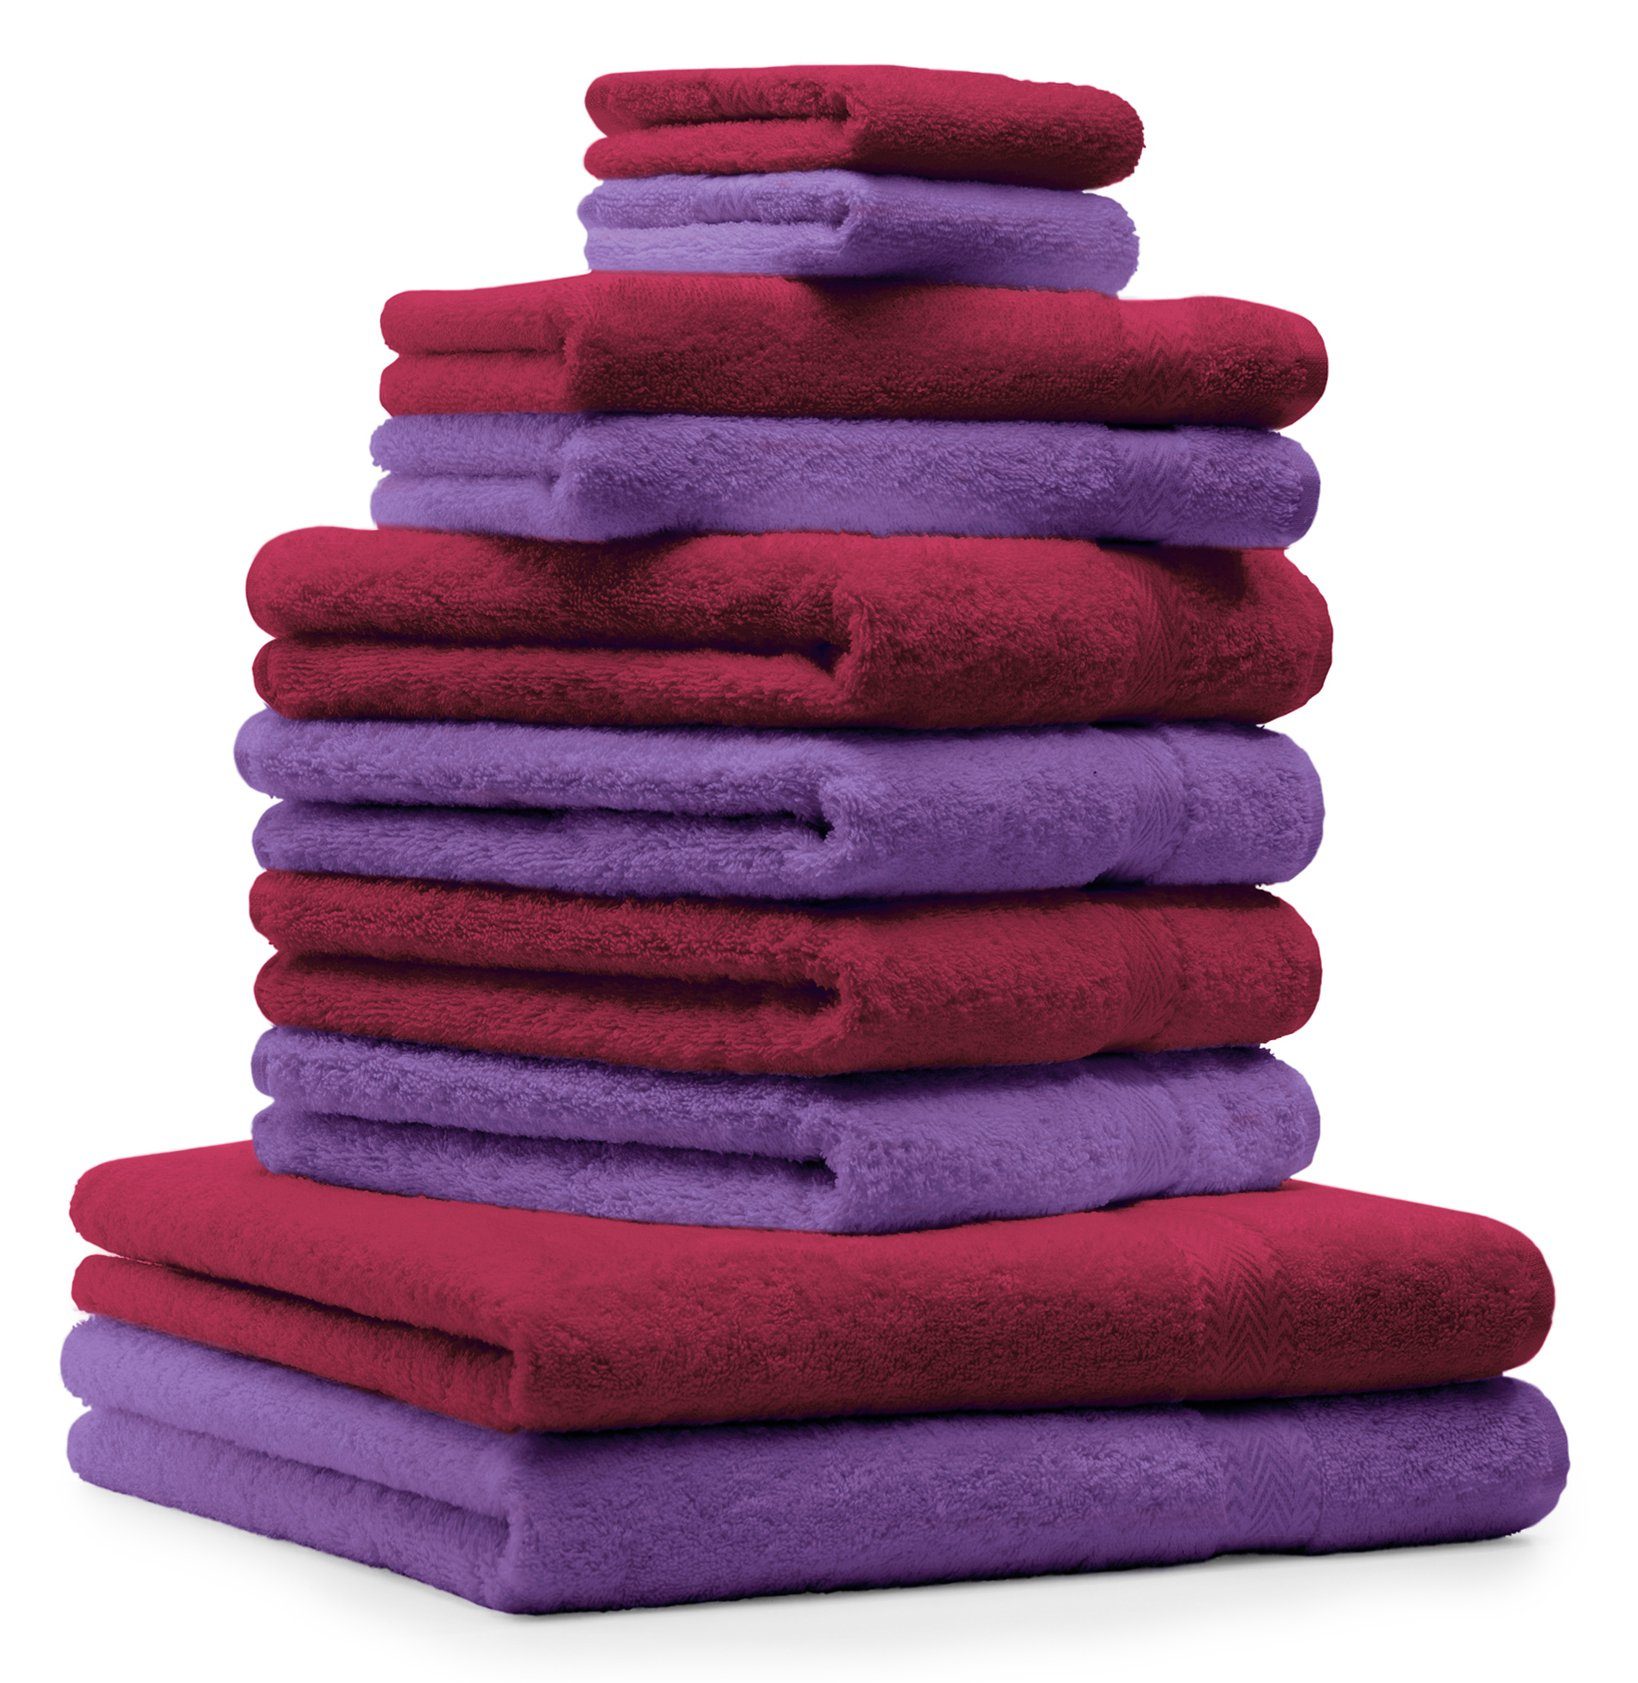 Betz Handtuch Set 100% Classic Baumwolle Handtuch-Set Baumwolle lila, 10-TLG. und dunkelrot 100